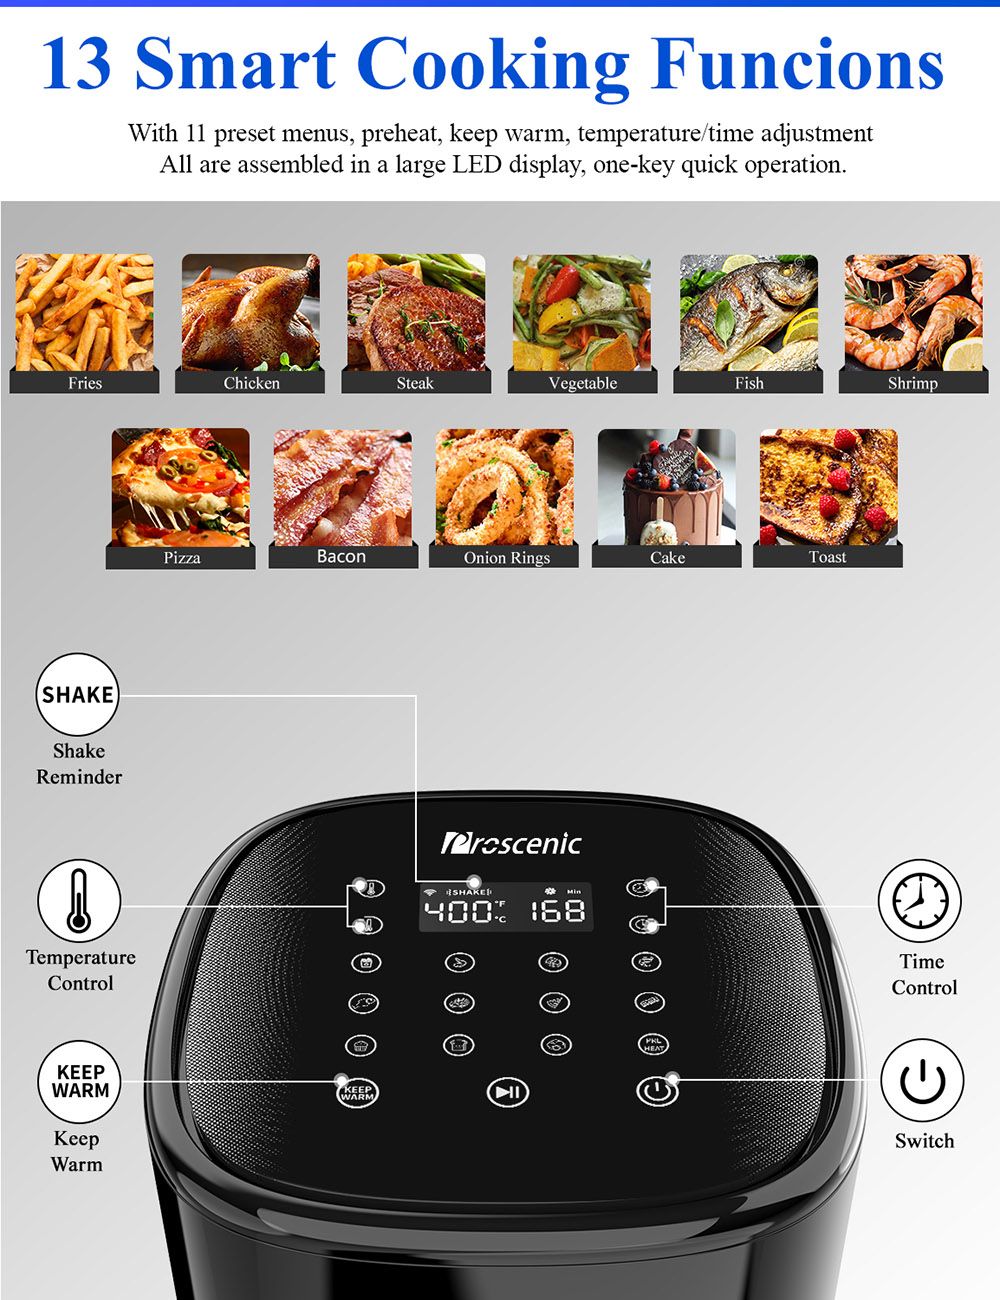 Proscenic T22 Smart Electric Air Fryer Безмасляная антипригарная сковорода 5L 3D HF Технология циркуляции Индивидуальные рецепты Светодиодный сенсорный экран Управление приложением - черный